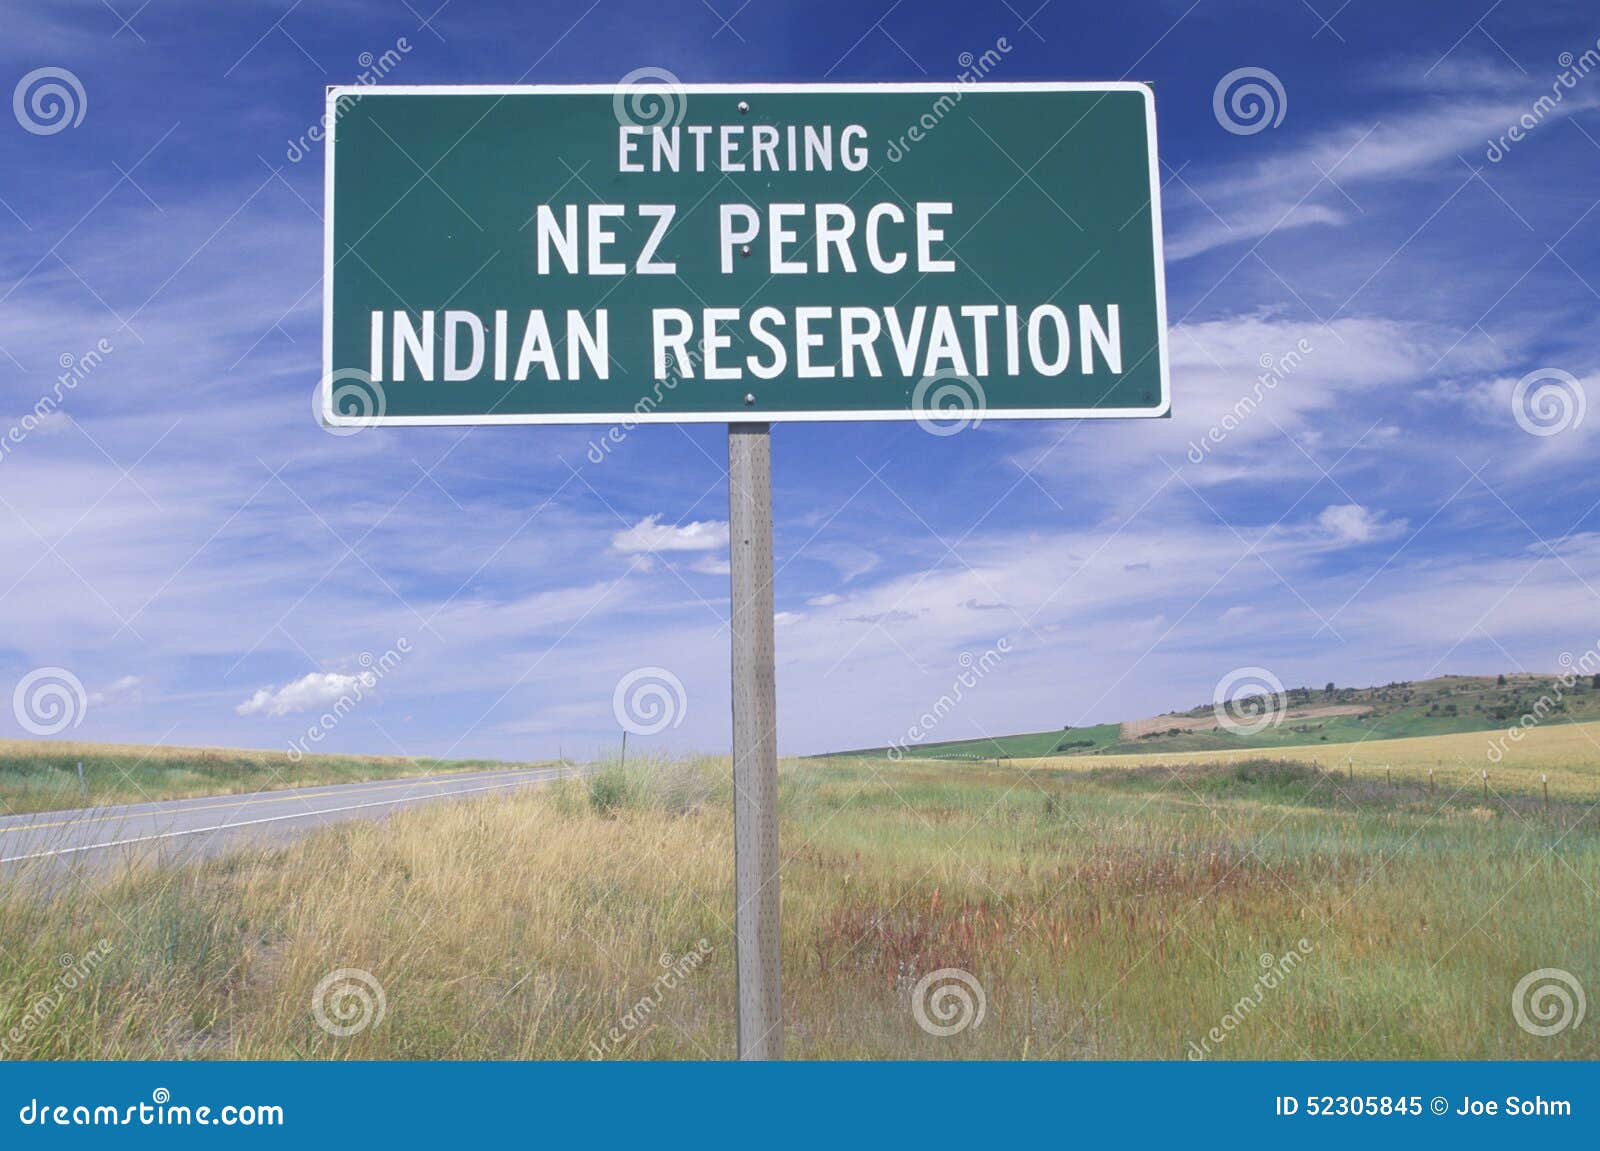 a sign that reads Ã¯Â¿Â½entering nez perce indian reservationÃ¯Â¿Â½